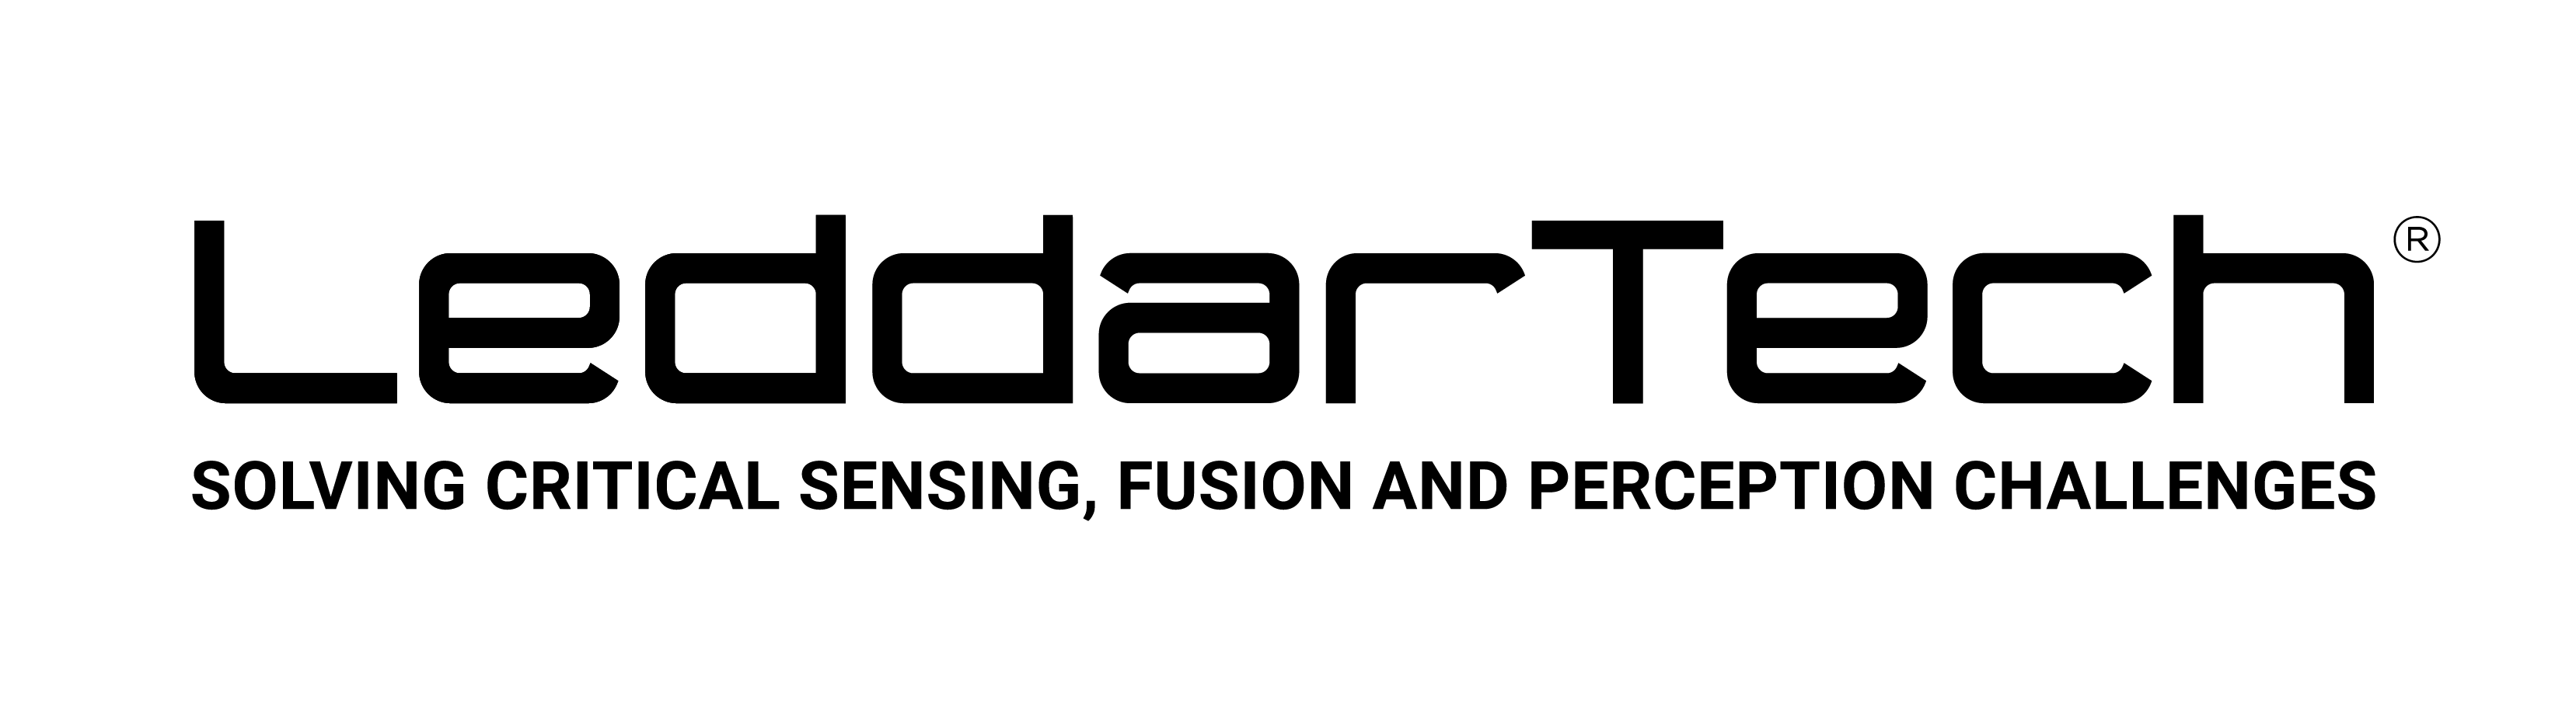 LeddarTech logo with byline_black_EN.png